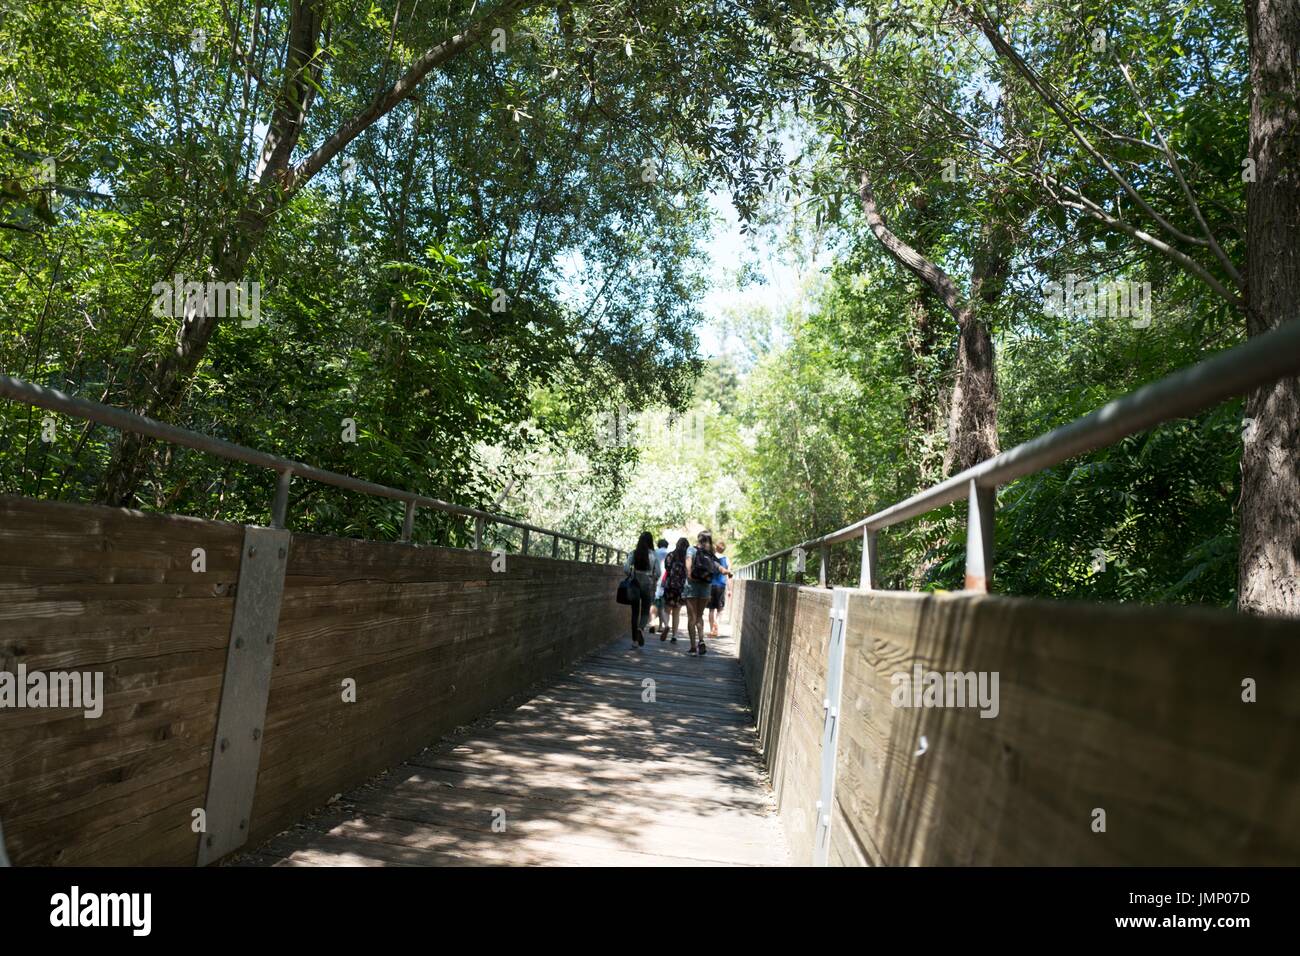 Eine Gruppe von Touristen geht auf eine lange, schmale Holzbrücke Cull Canyon regionale Recreation Area, ein East Bay Regional Park in der San Francisco Bay Area Stadt Castro Valley, Kalifornien, 30. Juni 2017. Stockfoto